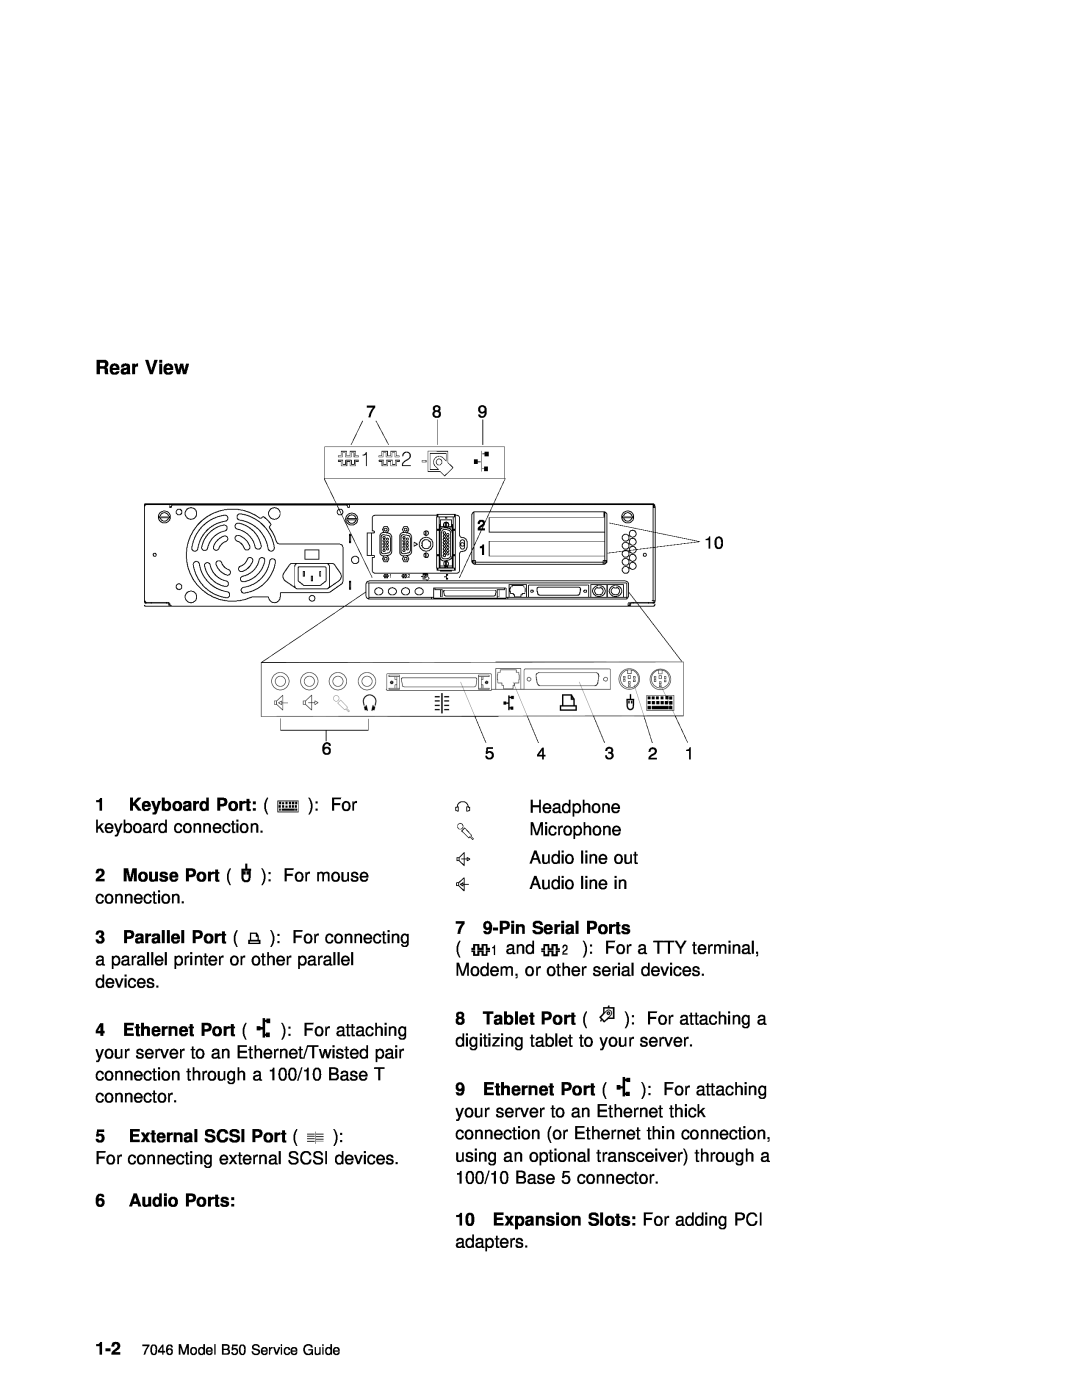 IBM B50 manual Rear View, Audio Ports, 7 9-Pin Serial Ports, Expansion Slots 